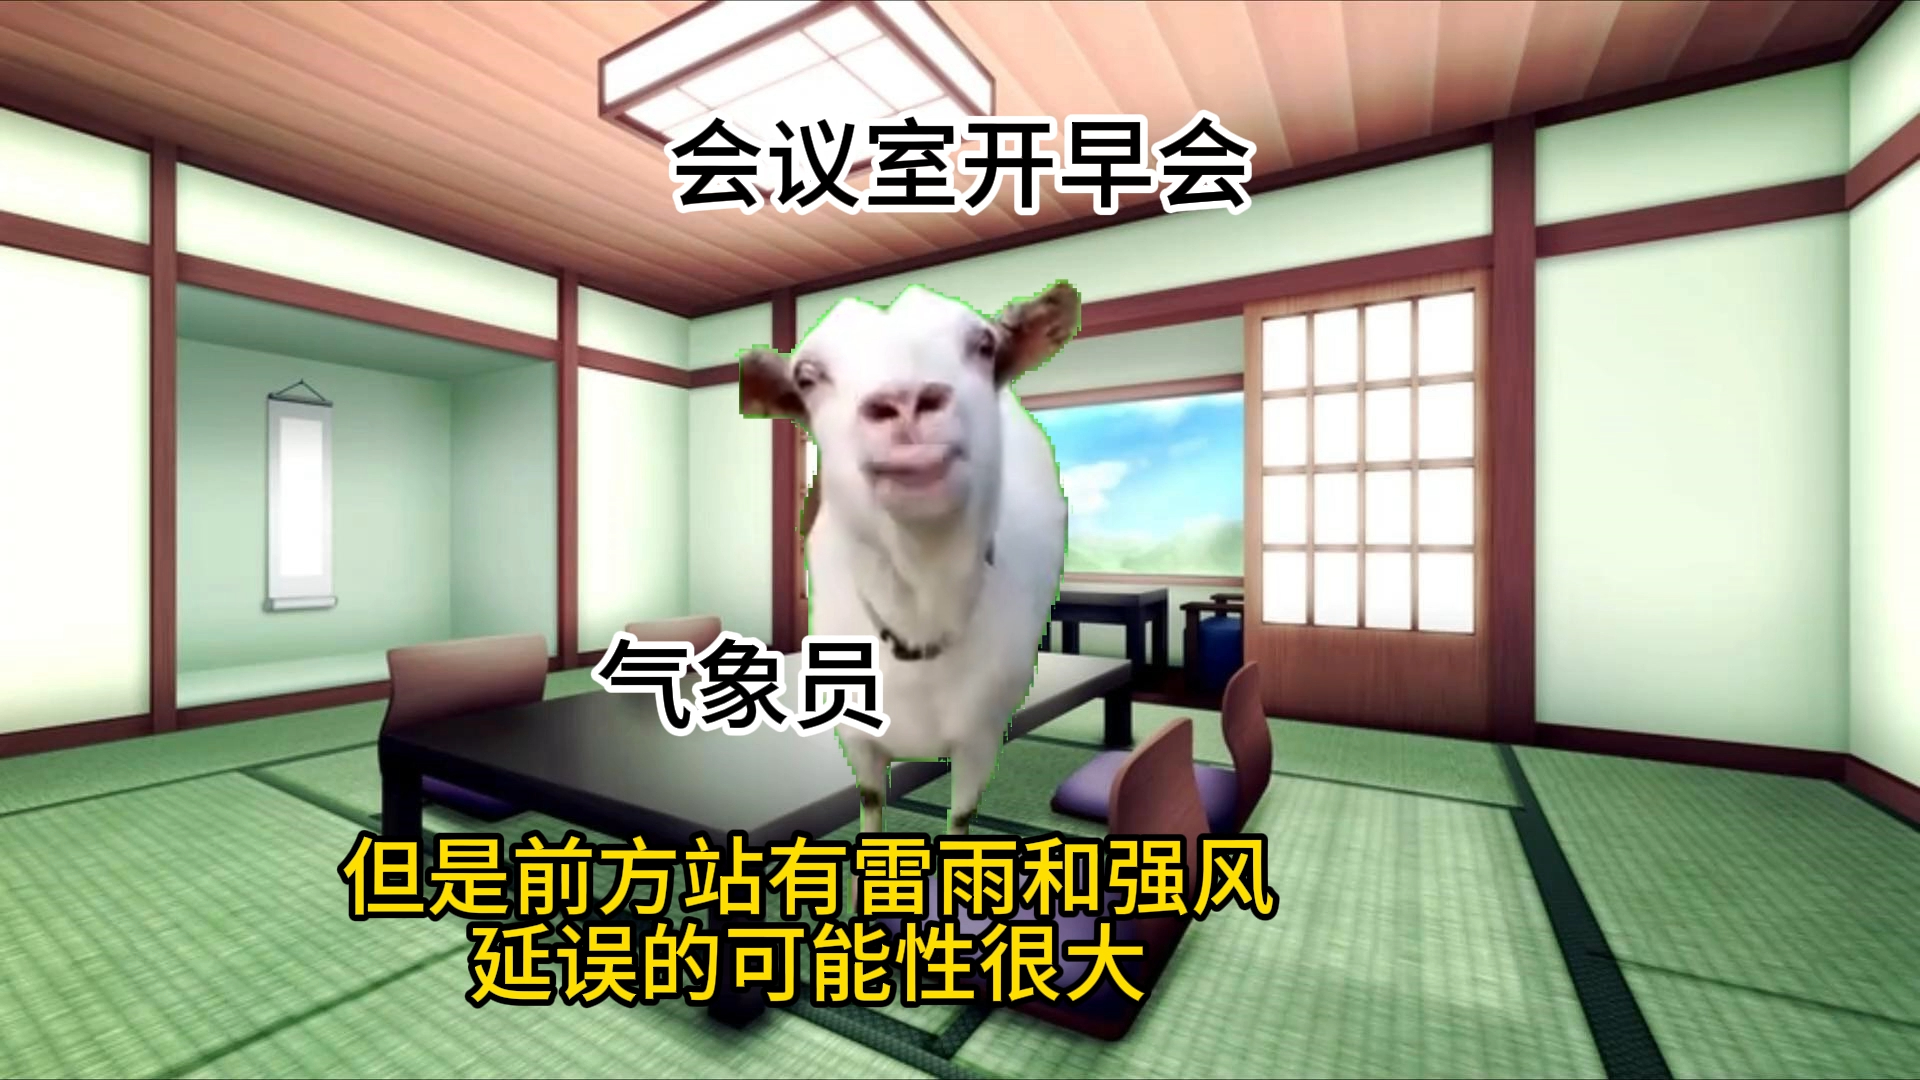 【猫meme】新人空管员第一次见识广州雷暴的一天